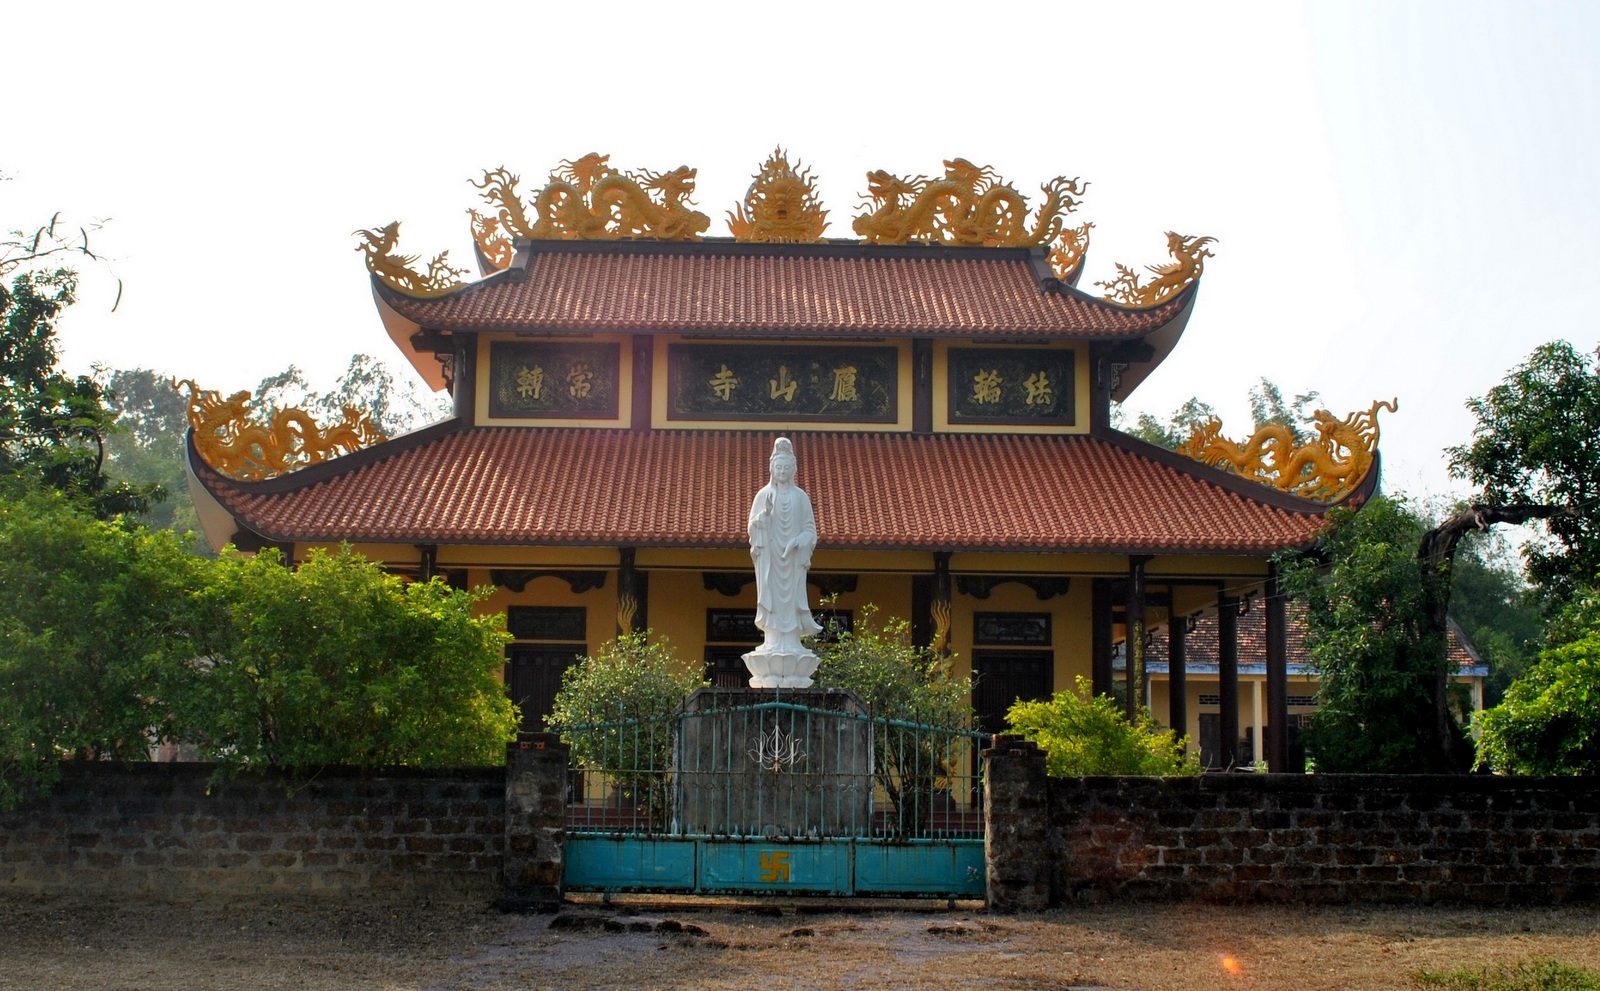 Vãn cảnh chùa Ông Đen Ông Đỏ, Bình Định